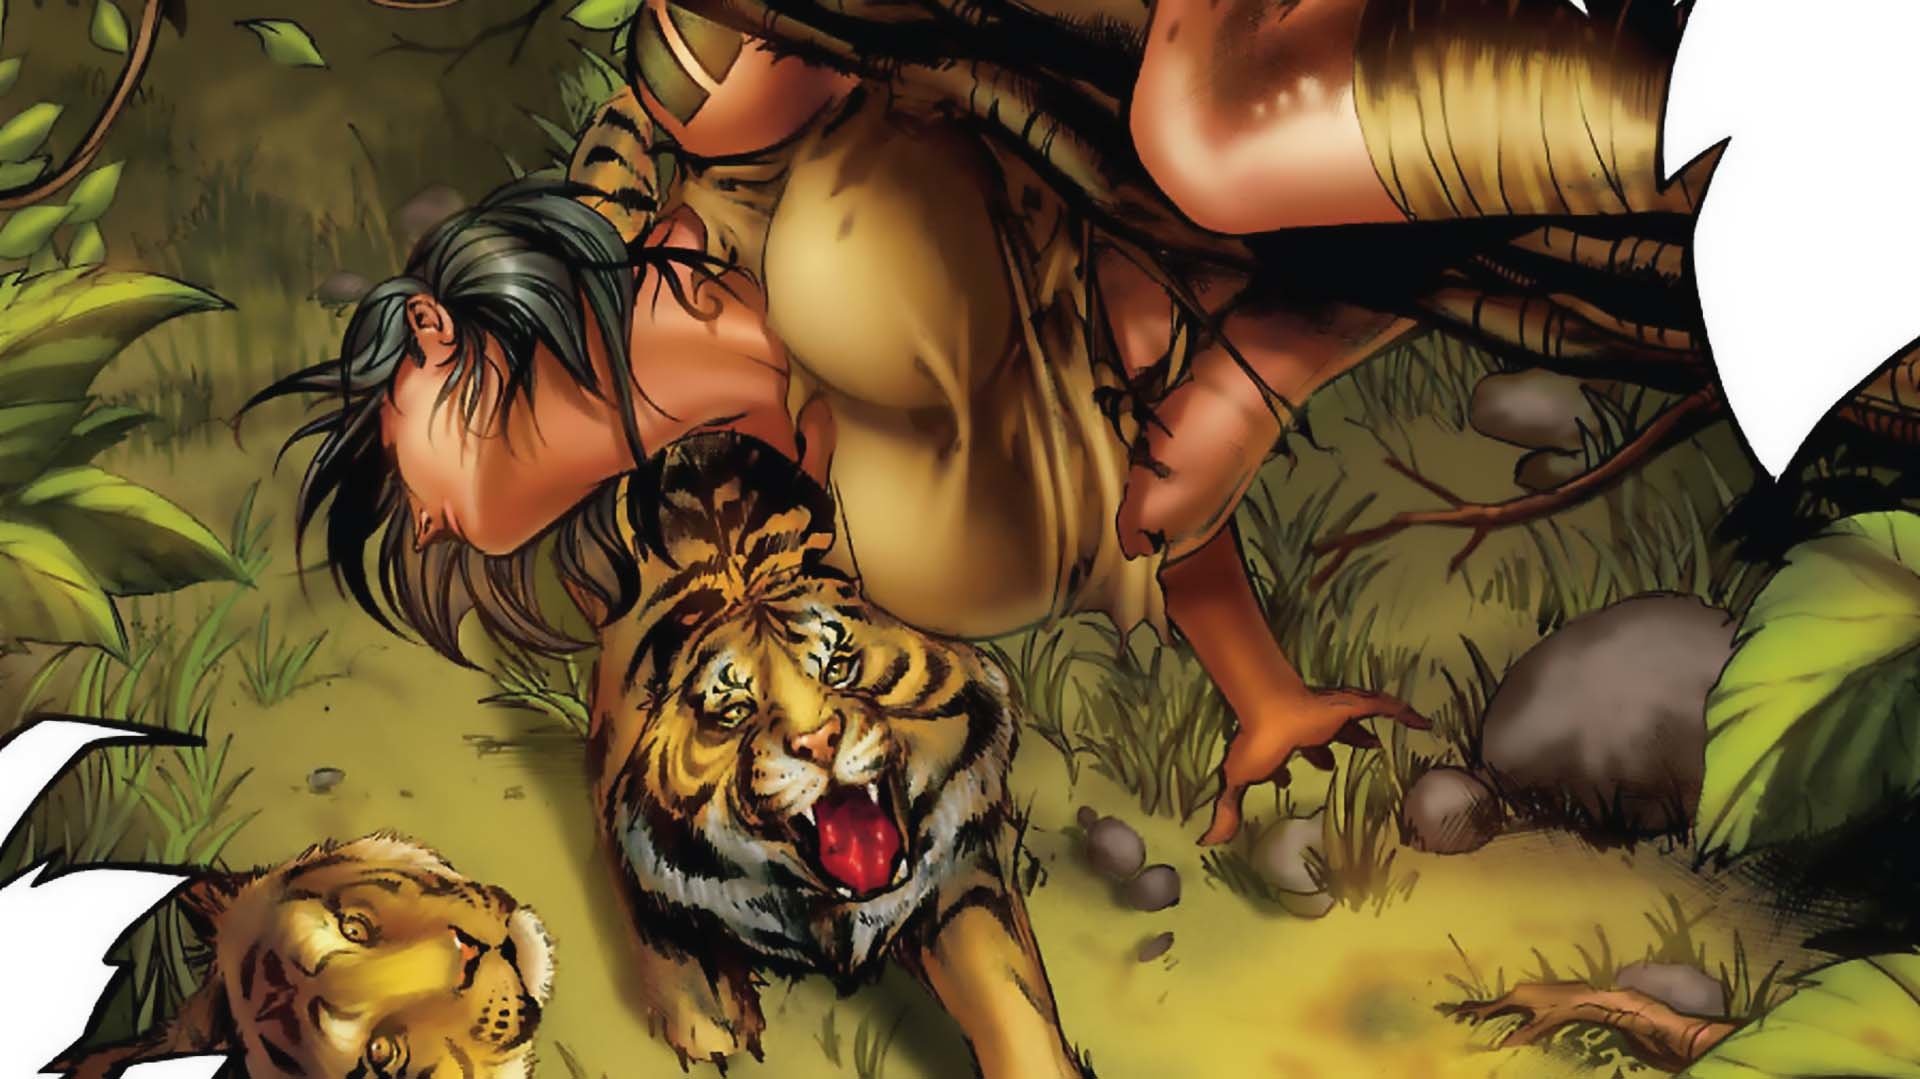 Grimm Fairy Tales: Jungle Book Pics, Comics Collection